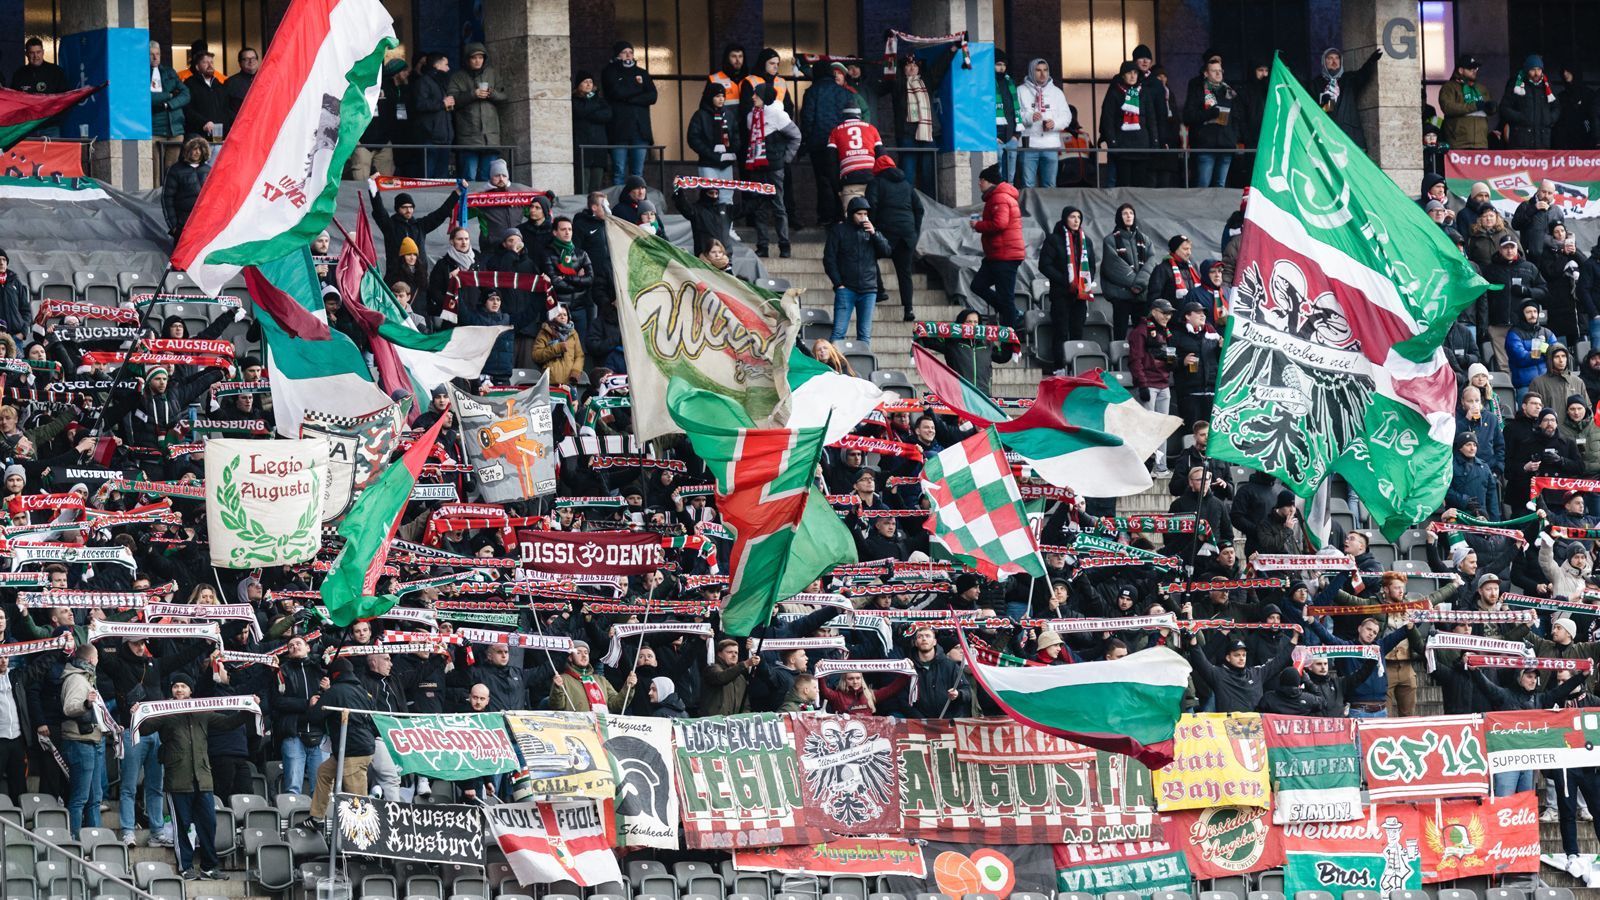 
                <strong>Platz 16 - FC Augsburg</strong><br>
                &#x2022; Durchschnittliche Anzahl an Auswärtsfans: 1.339<br>&#x2022; Höchste Anzahl an Auswärtsfahrern: 4.000 (in München)<br>&#x2022; Niedrigste Anzahl an Auswärtsfahrern: 350 (in Wolfsburg)<br>
              